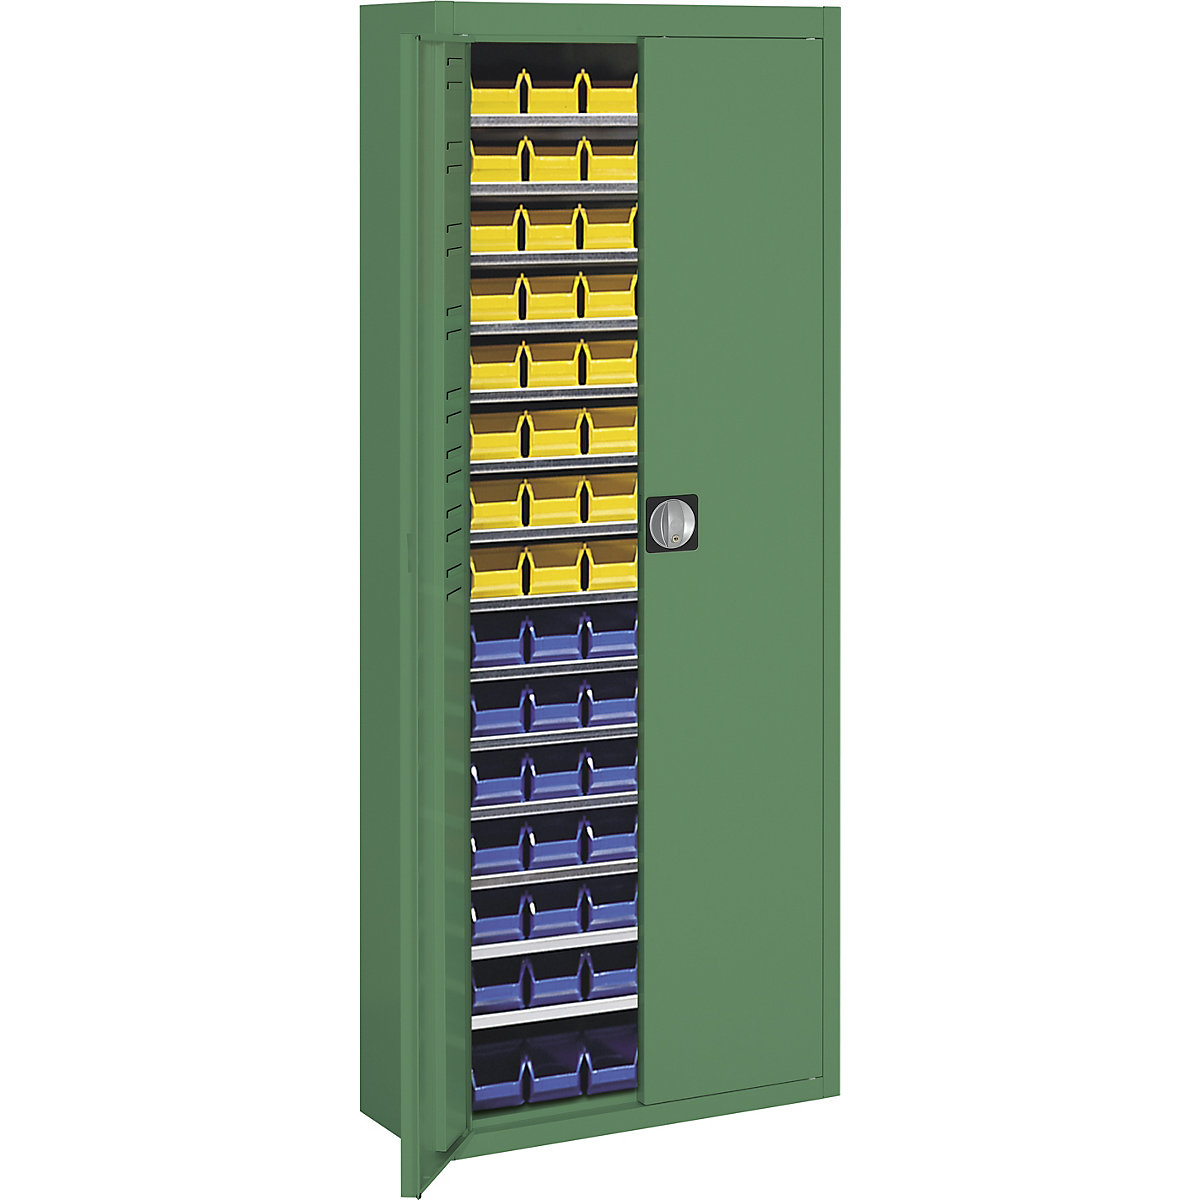 Skladiščna omara z odprtimi skladiščnimi posodami – mauser, VxŠxG 1740 x 680 x 280 mm, ena barva, zelena, 90 posod-13